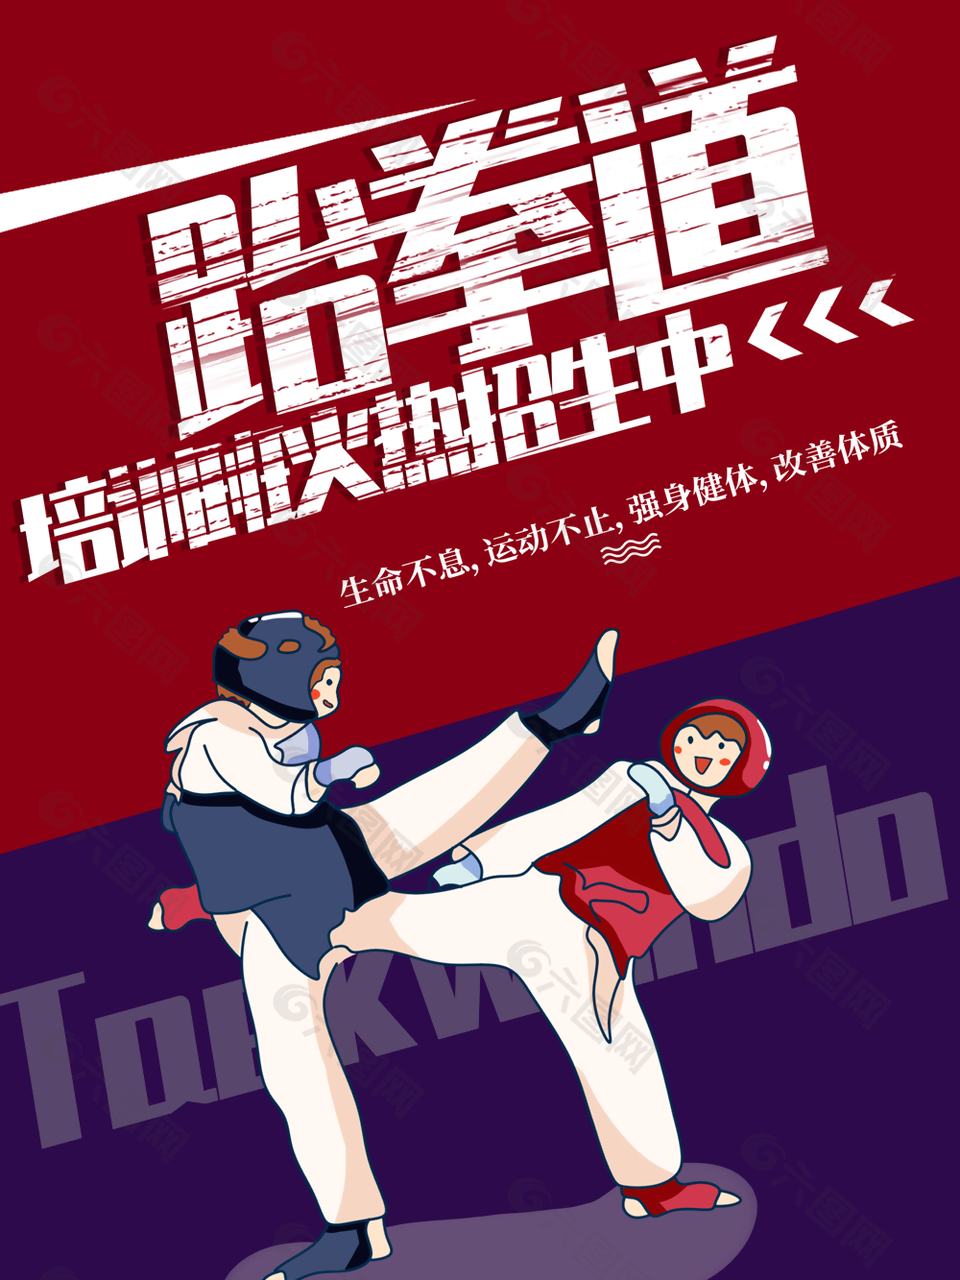 卡通创意跆拳道兴趣班宣传海报设计